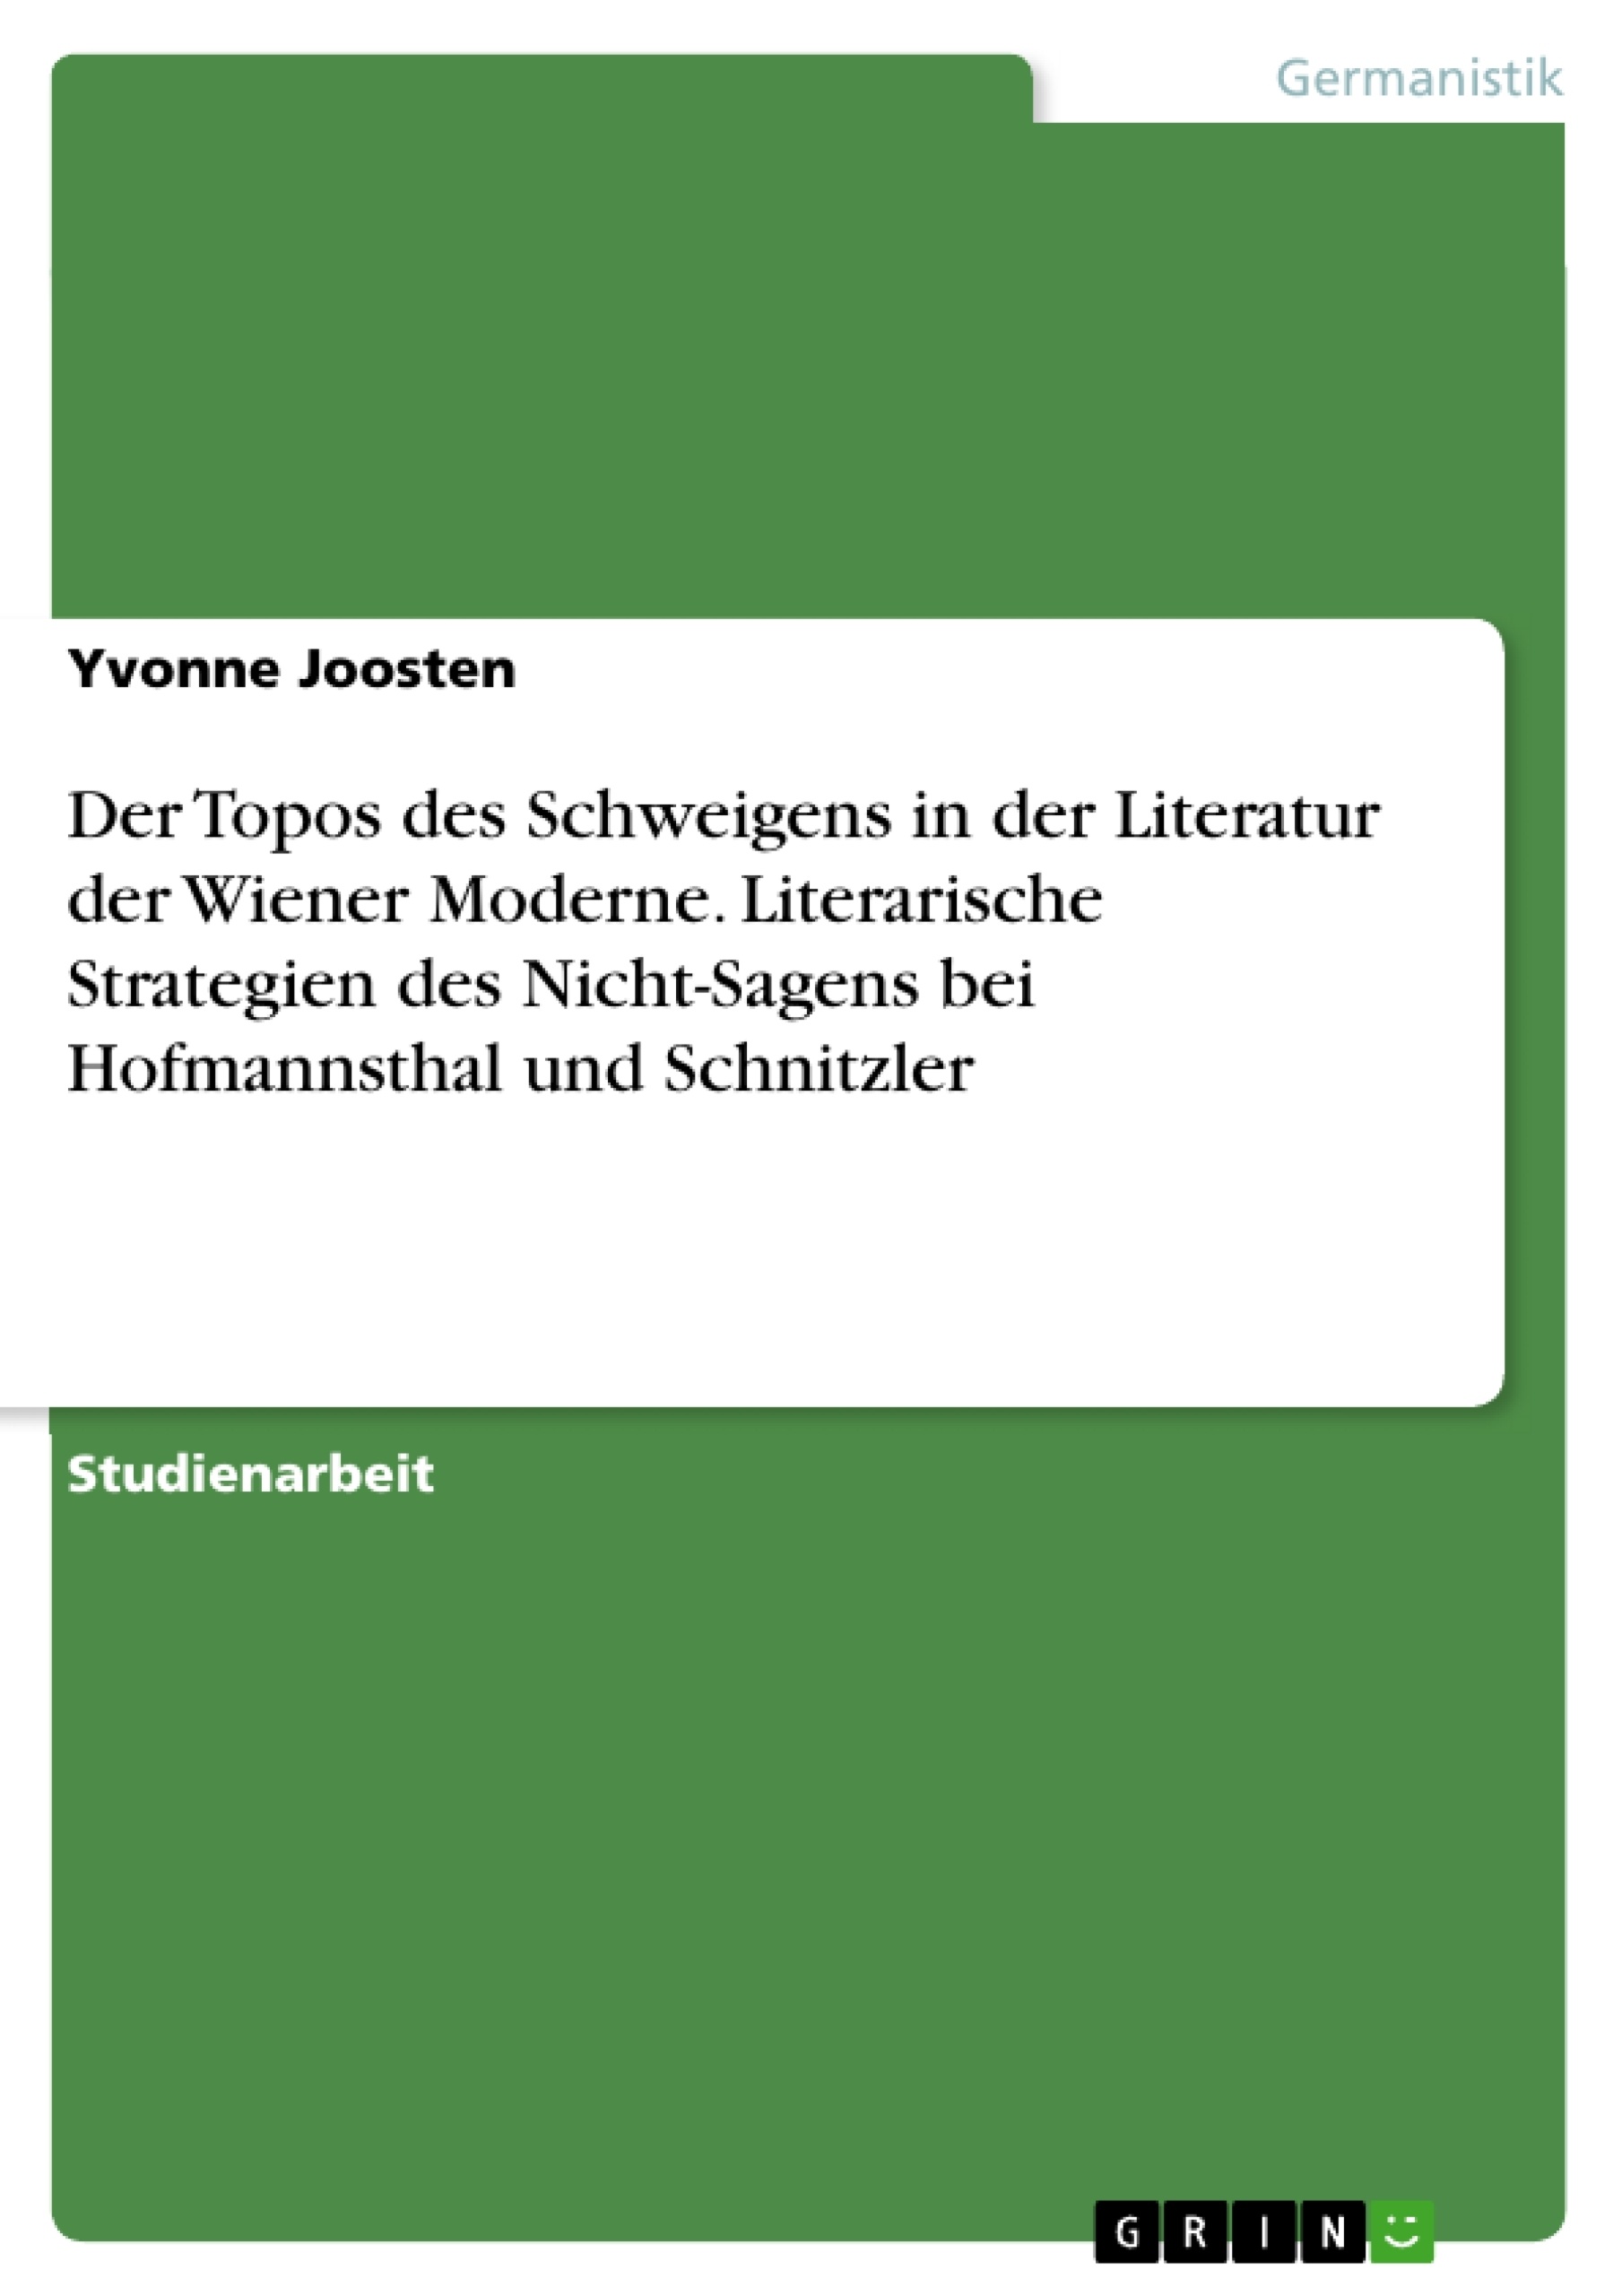 Titel: Der Topos des Schweigens in der Literatur der Wiener Moderne. Literarische Strategien des Nicht-Sagens bei Hofmannsthal und Schnitzler